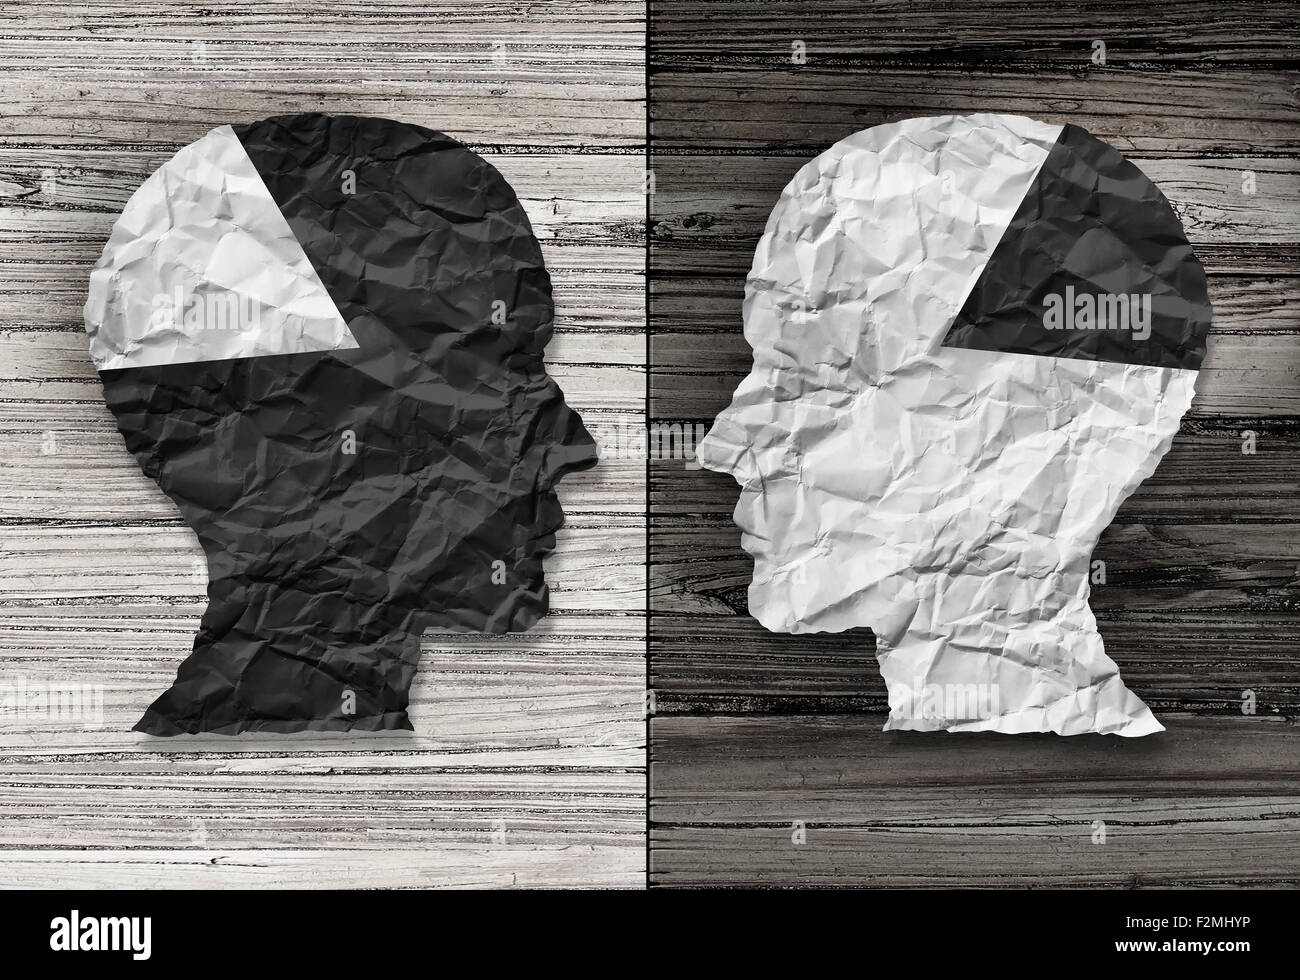 Etnica concetto di uguaglianza e di giustizia razziale simbolo come un bianco e nero carta sgualcita conformata come una testa umana sul vecchio legno rustico Foto Stock